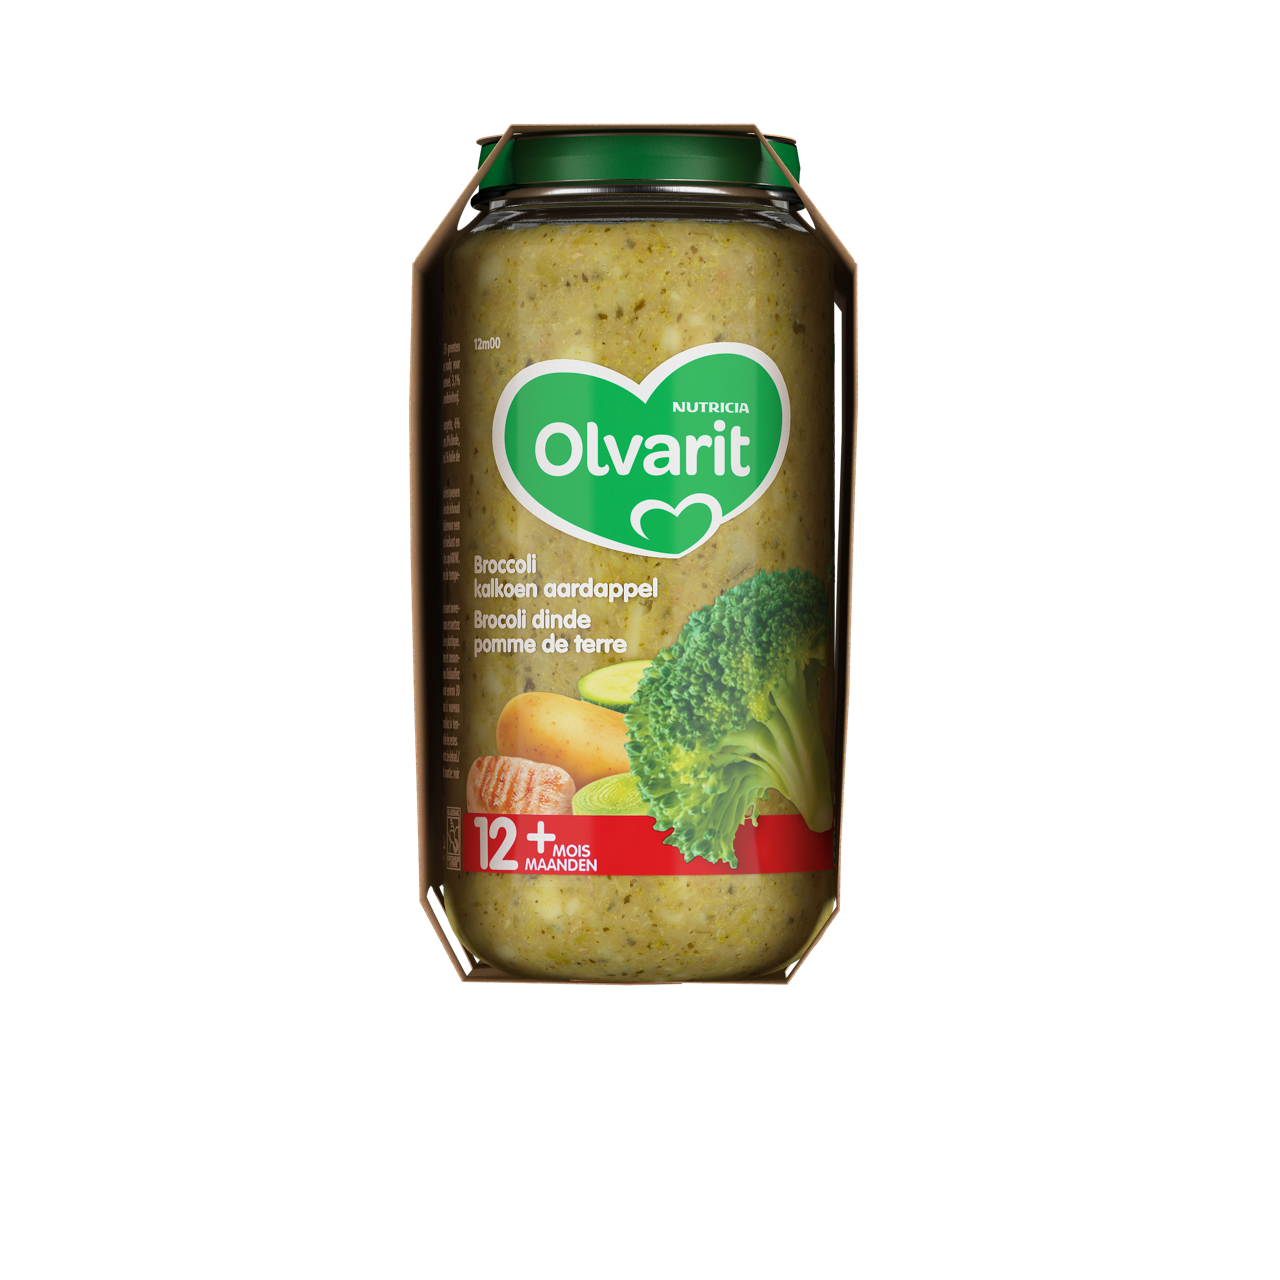 Olvarit Brocoli Dinde Pomme de terre. Consultez notre site web Olvarit.be pour plus d'info sur alimentation pour bébé et les produits Olvarit.